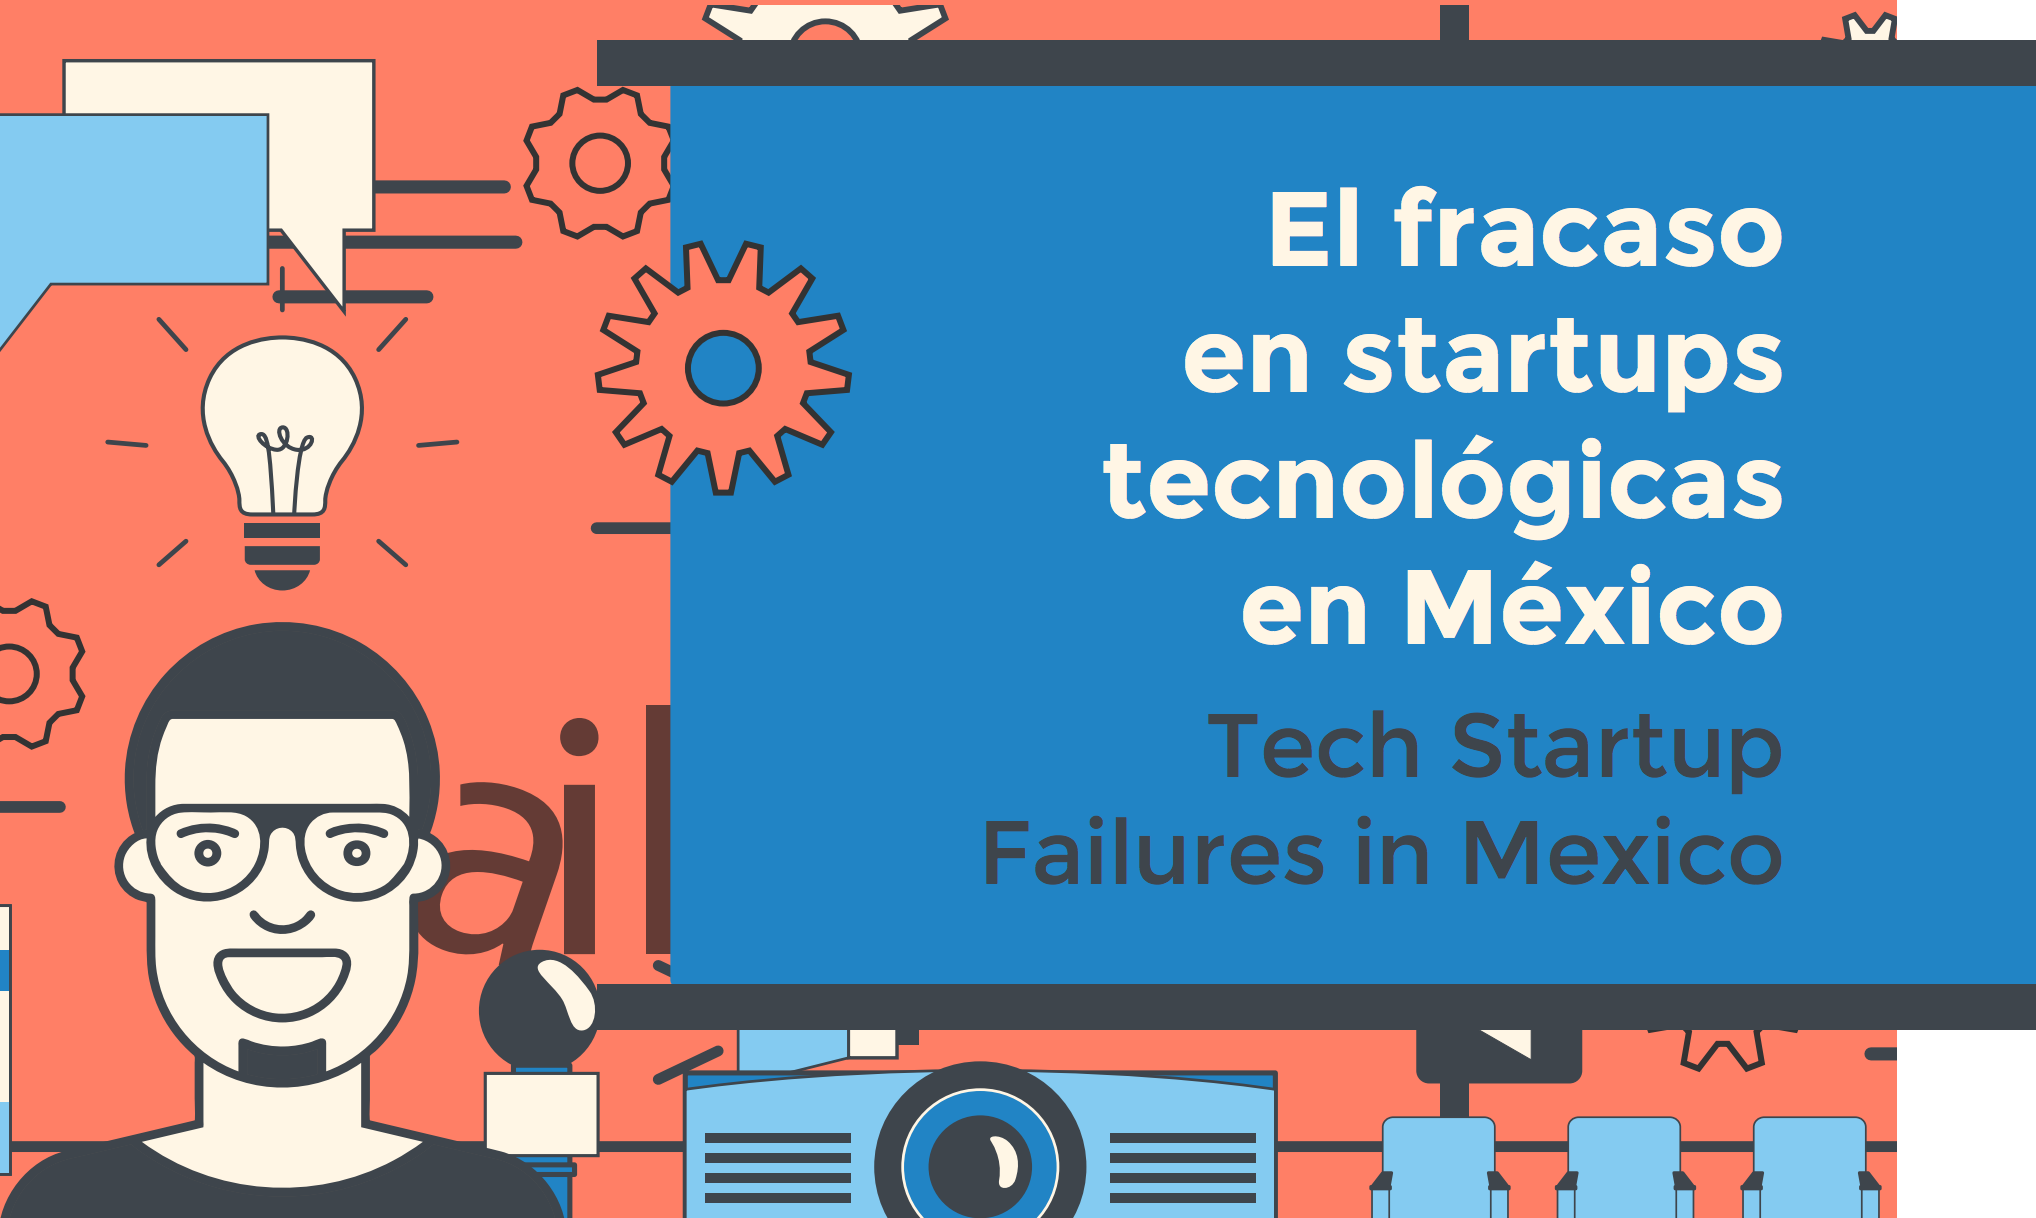 El fracaso en startups tecnológicas en México, un estudio de The Failure Institute